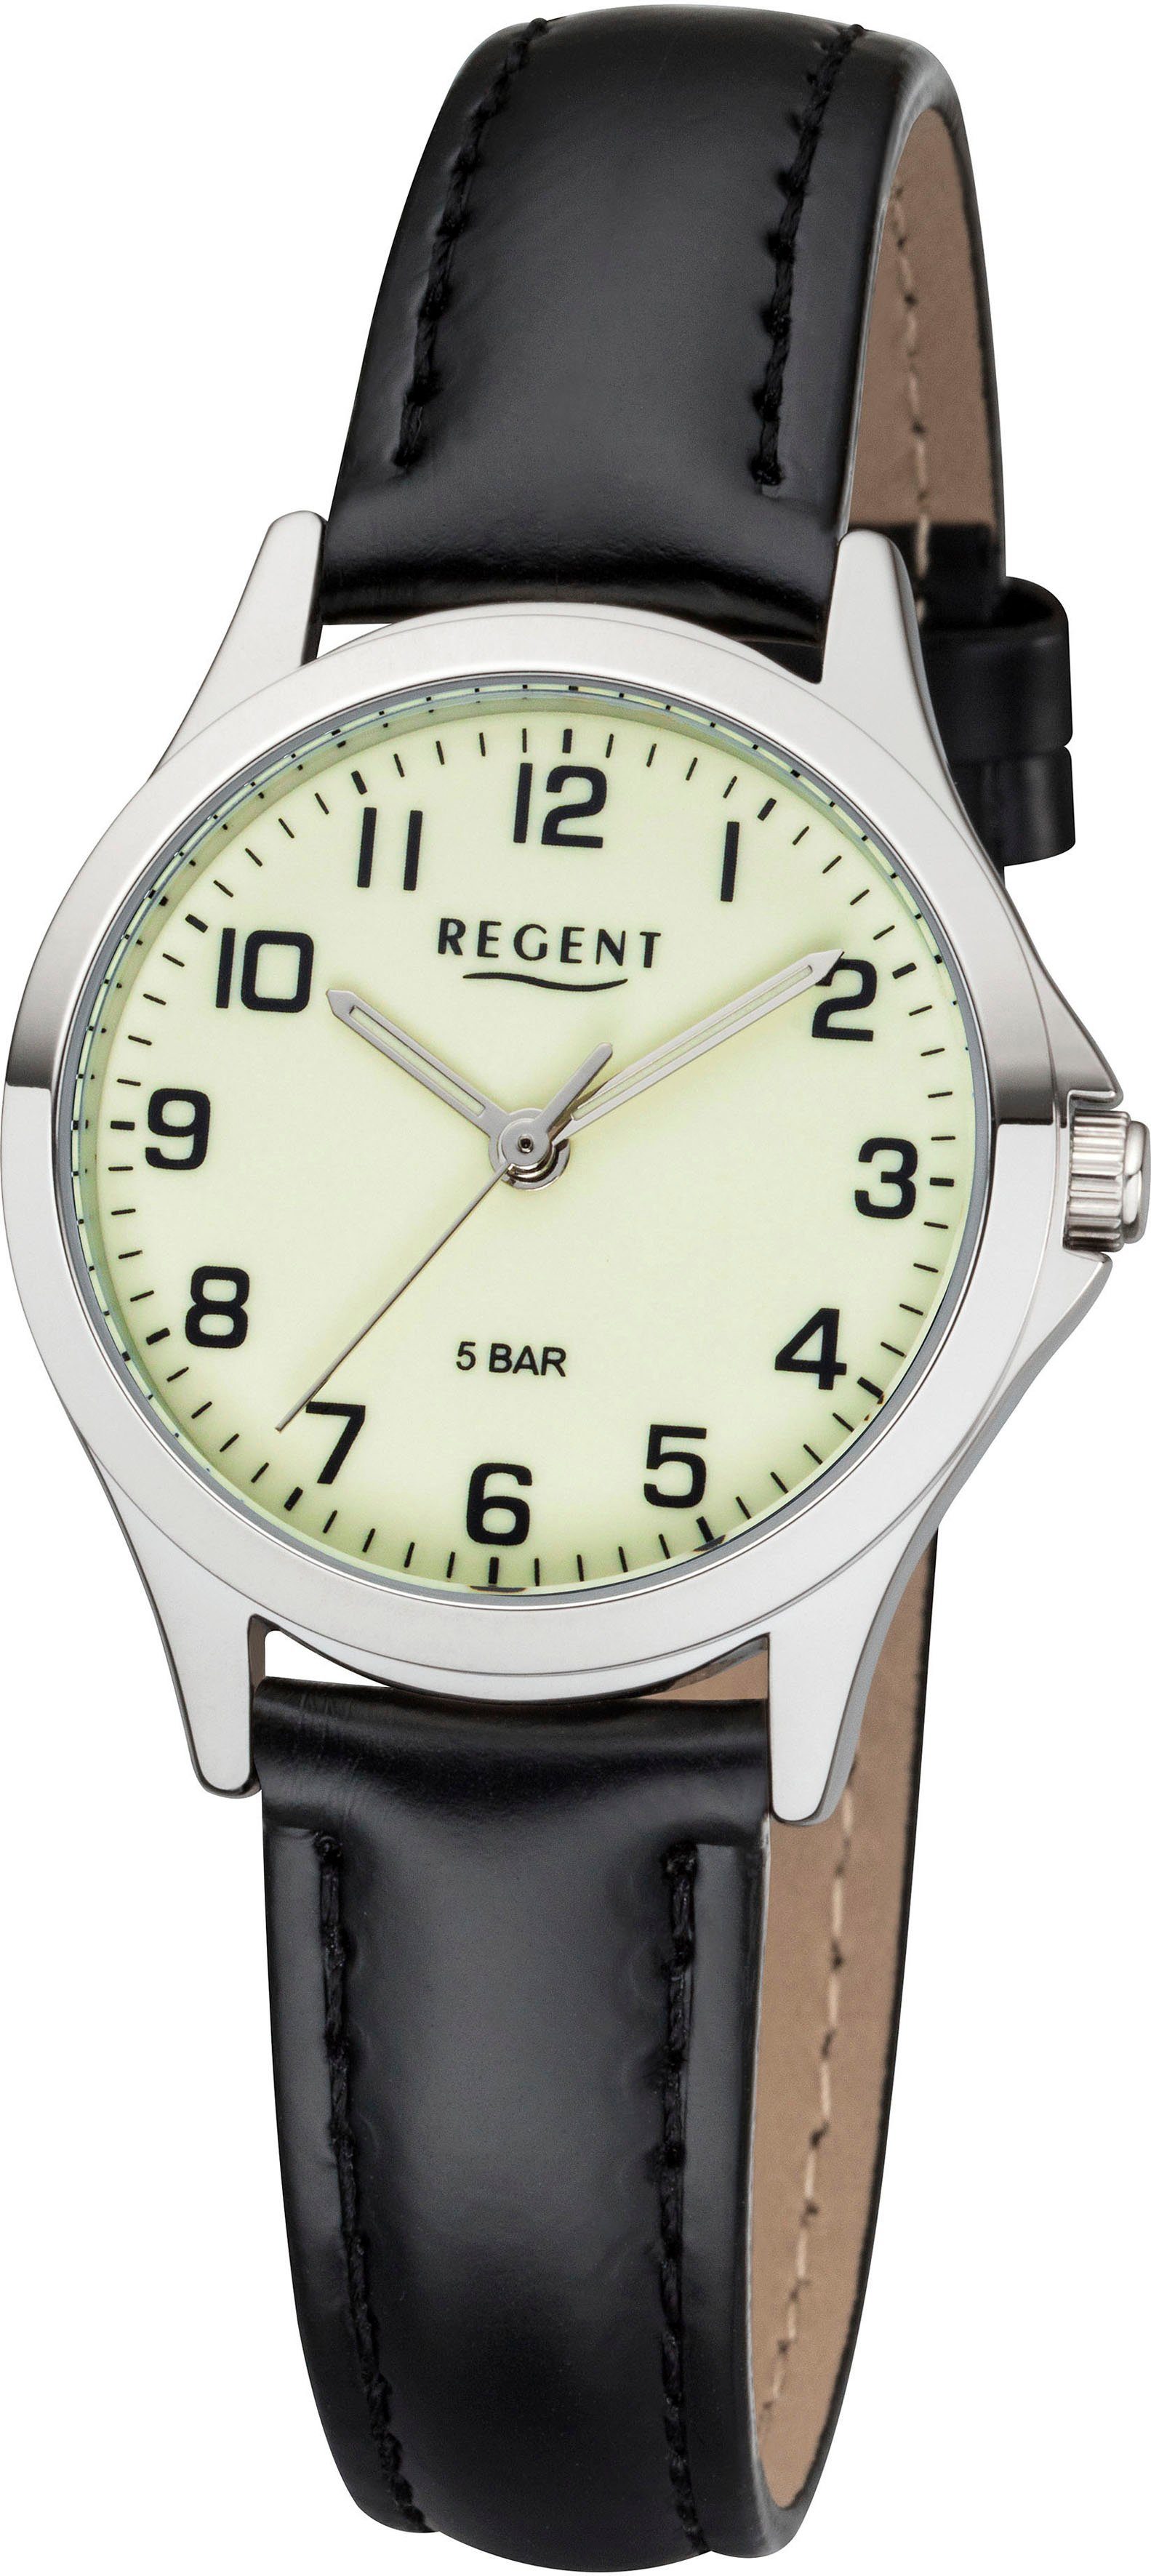 Regent Quarzuhr 12111164 - 3085.78.17, Armbanduhr, Damenuhr, Mineralglas, analog